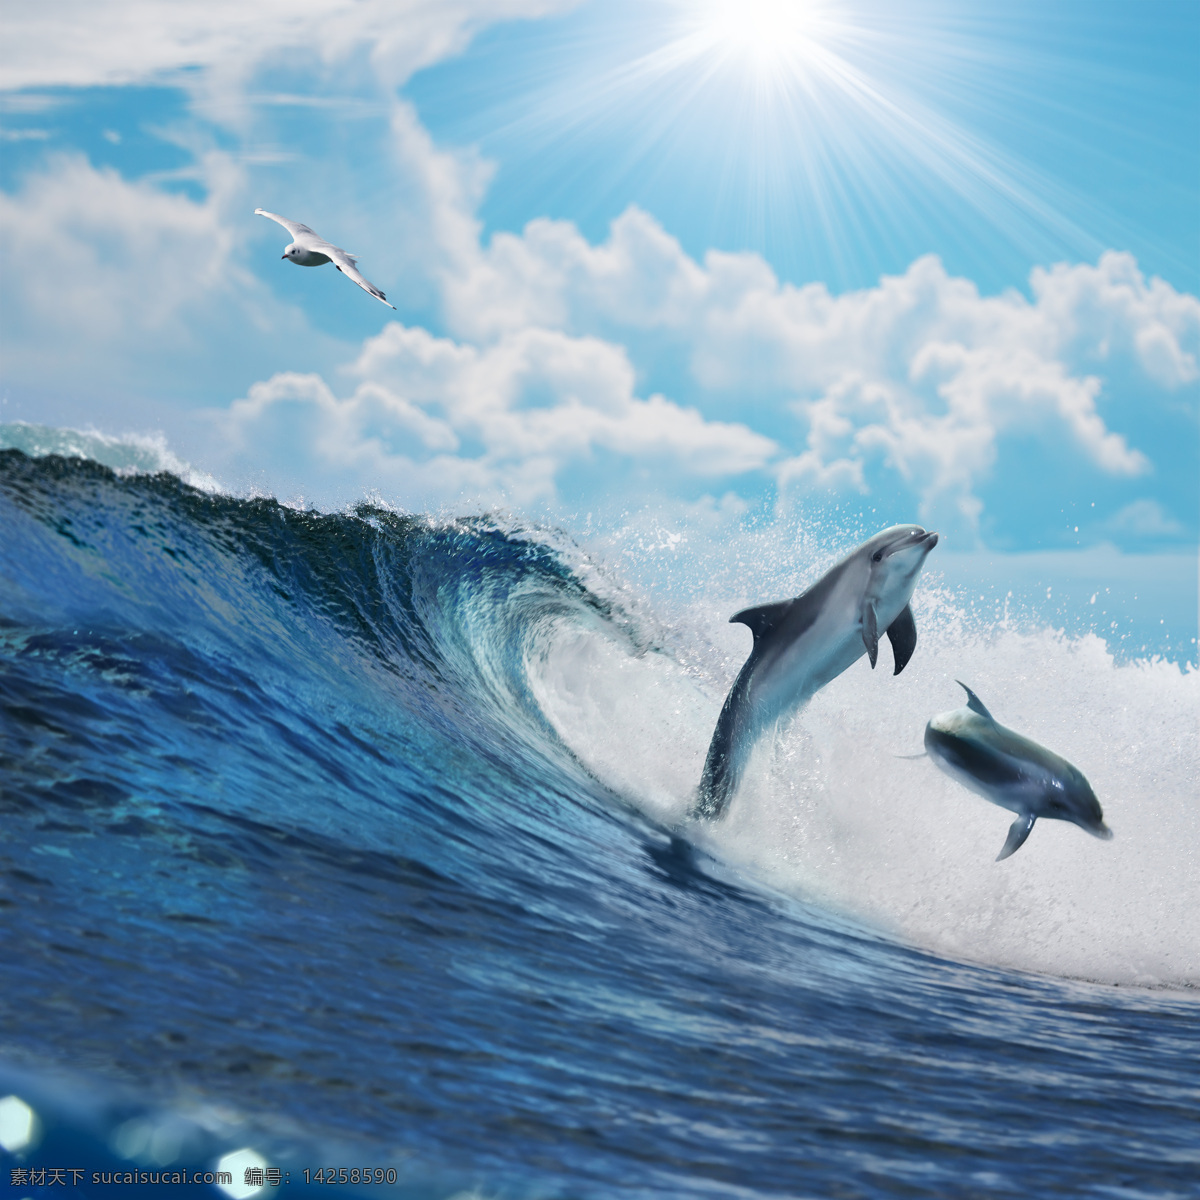 跳出 水 面的 海豚 海洋动物 海洋生物 动物世界 大海 海水 海洋海边 大海图片 风景图片